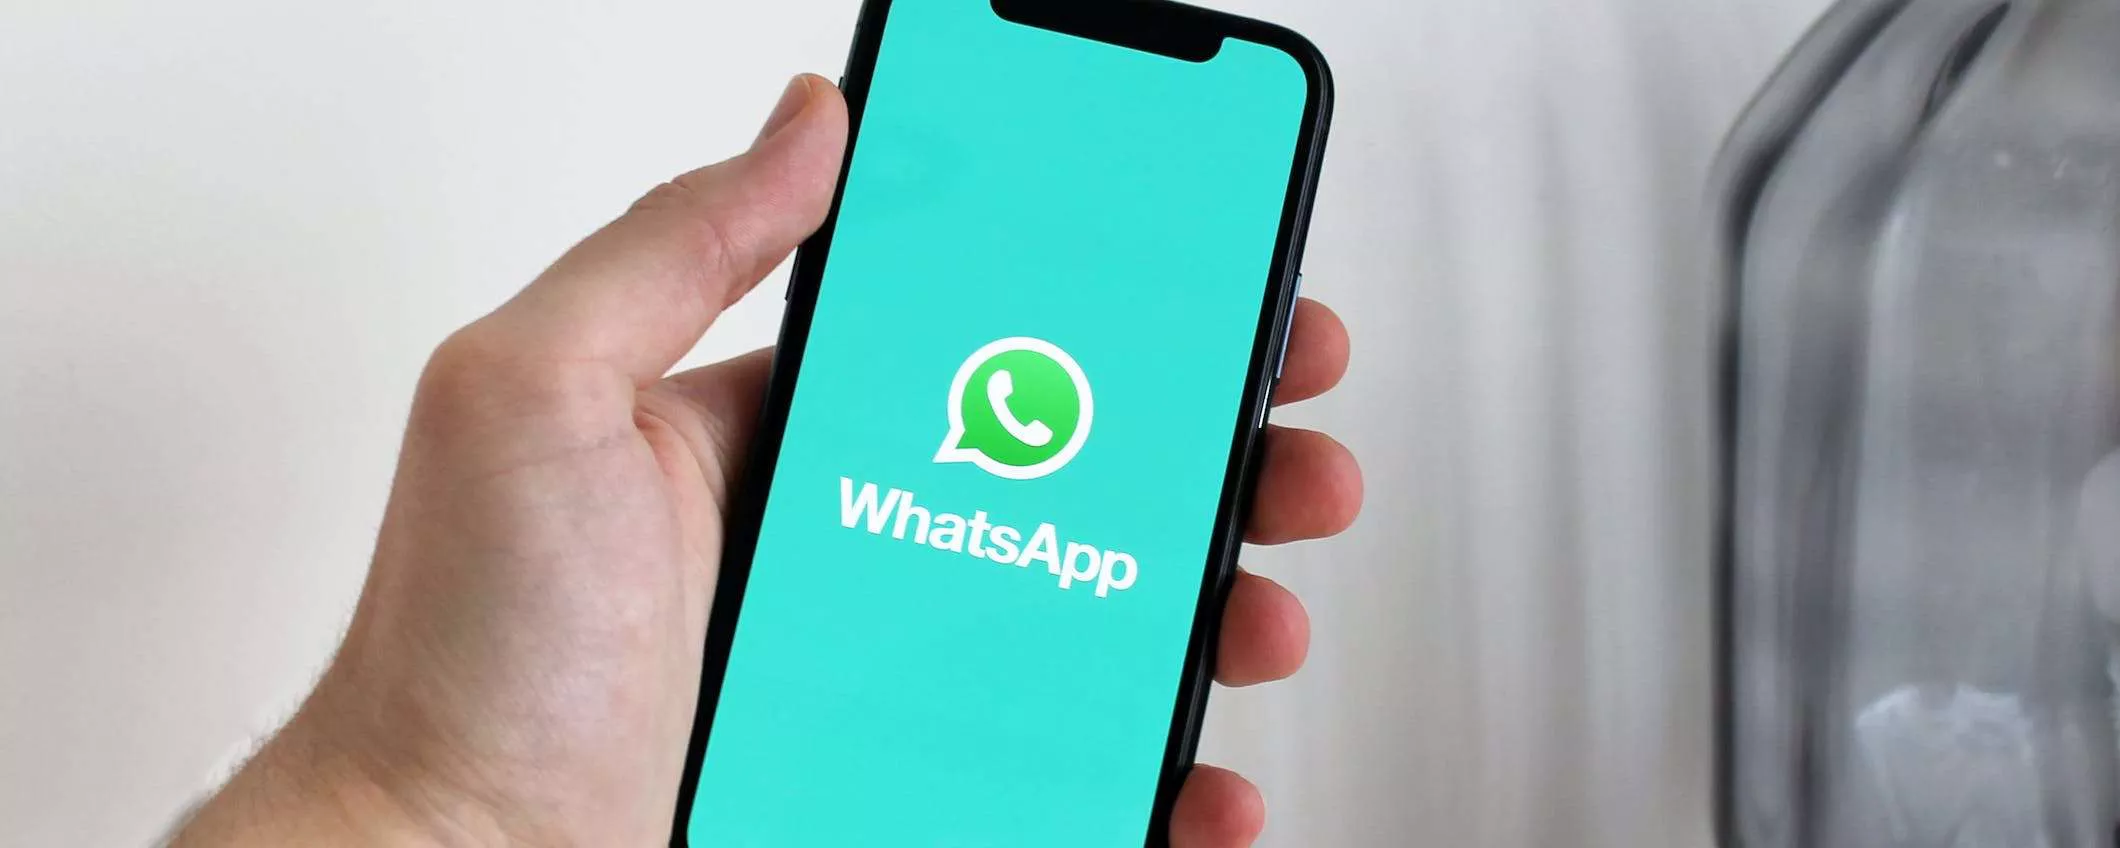 La ricerca dei messaggi per data su WhatsApp sarà presto su Android